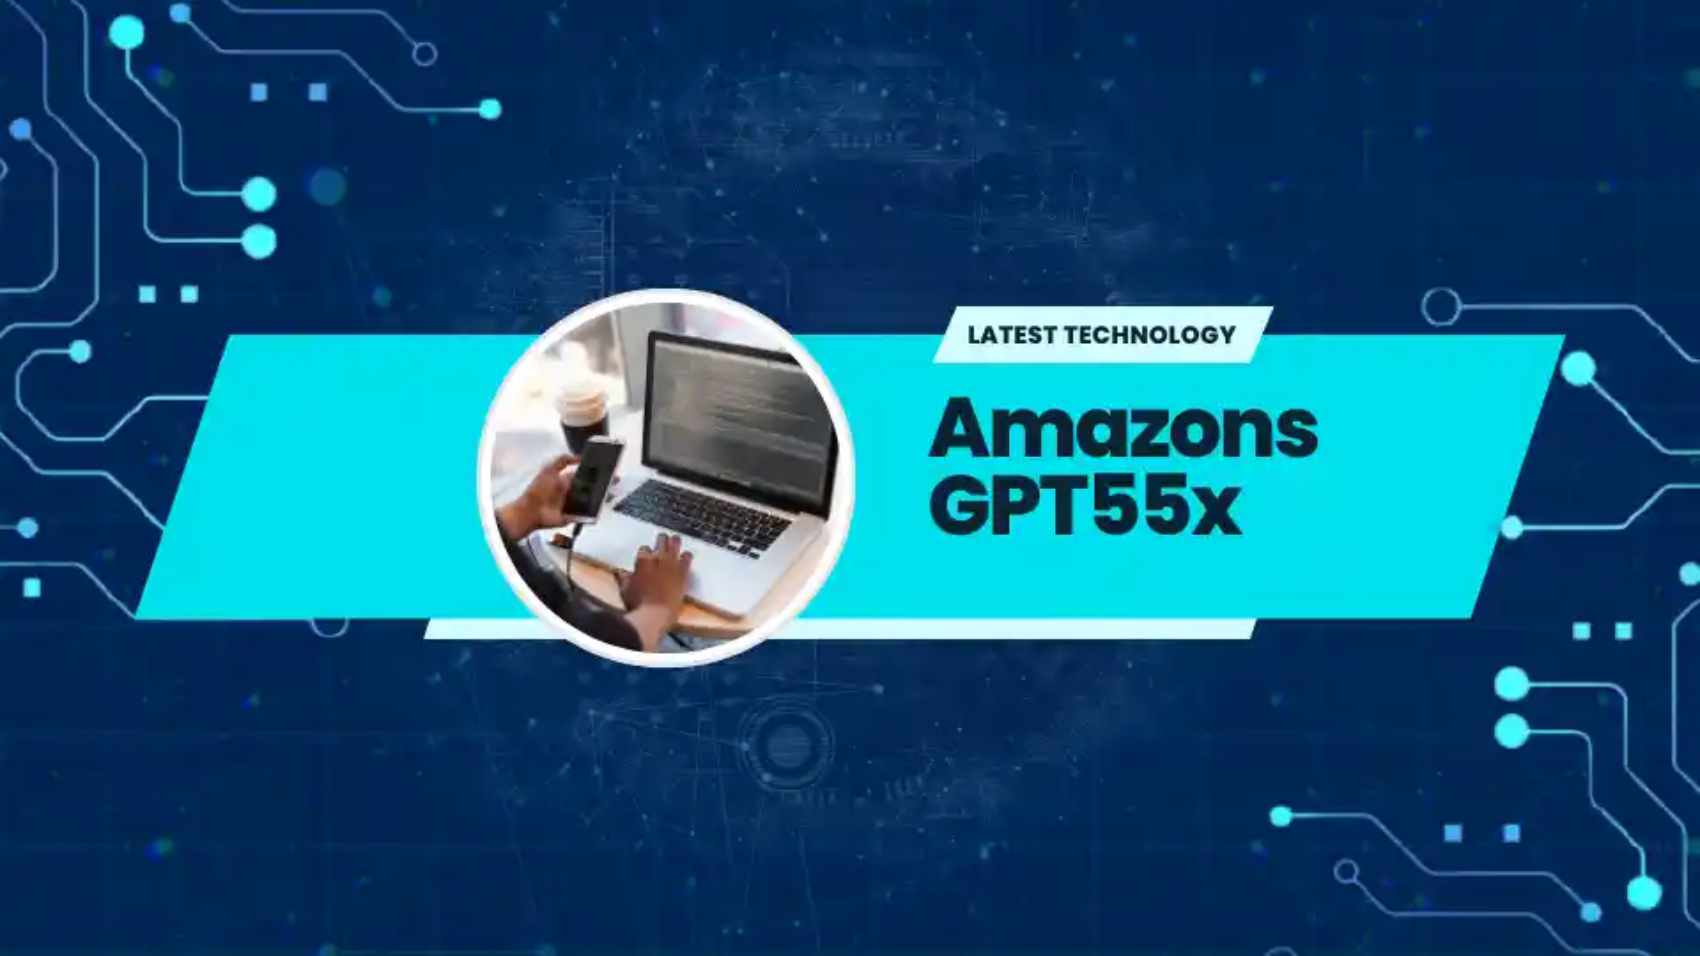 Amazons GPT55x